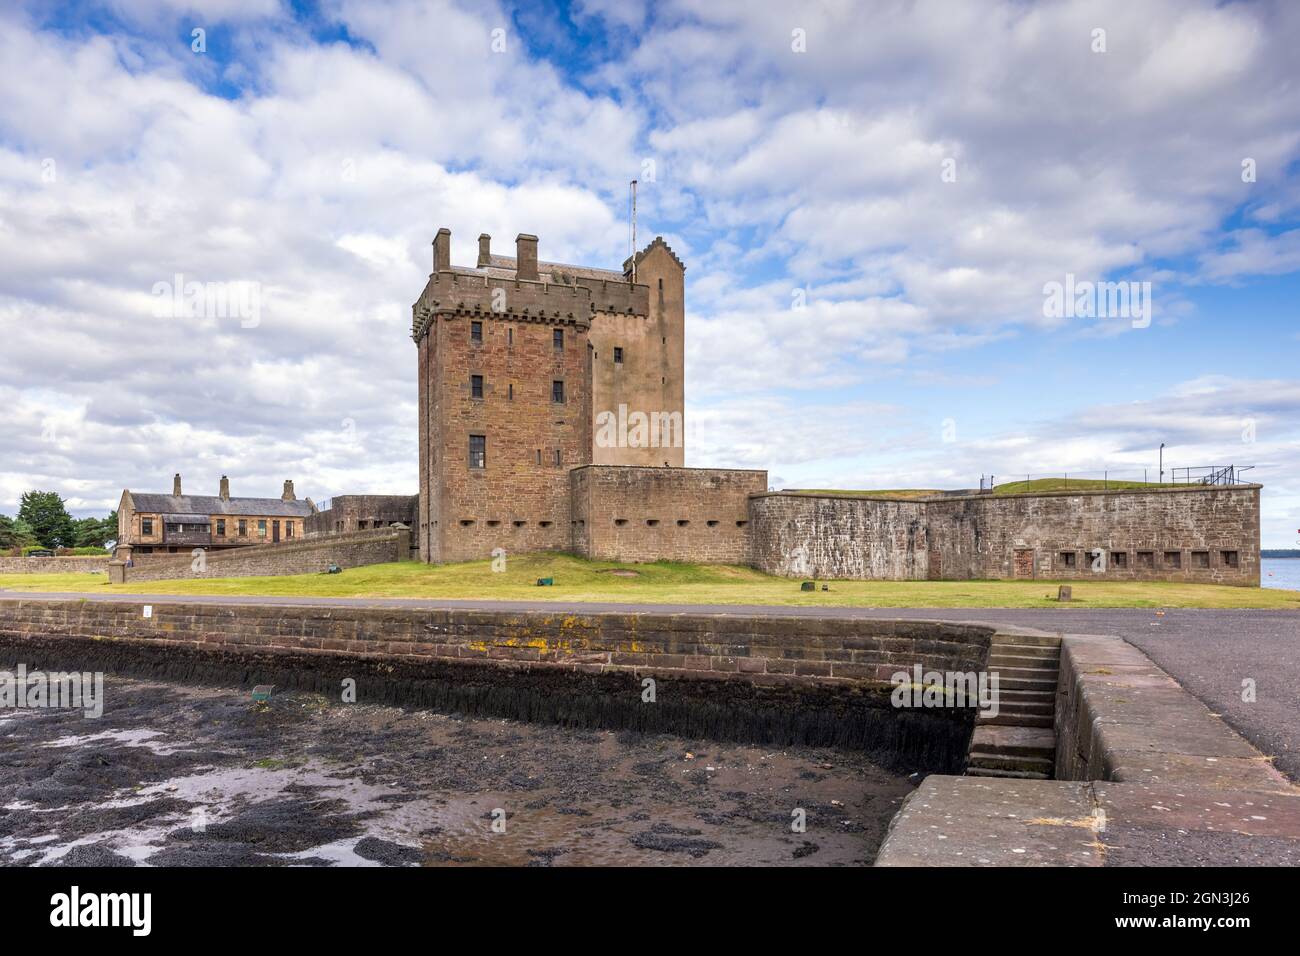 Le château de Broughty est un château historique situé sur les rives de la rivière Tay, à Broughty Ferry, Dundee, en Écosse. Banque D'Images